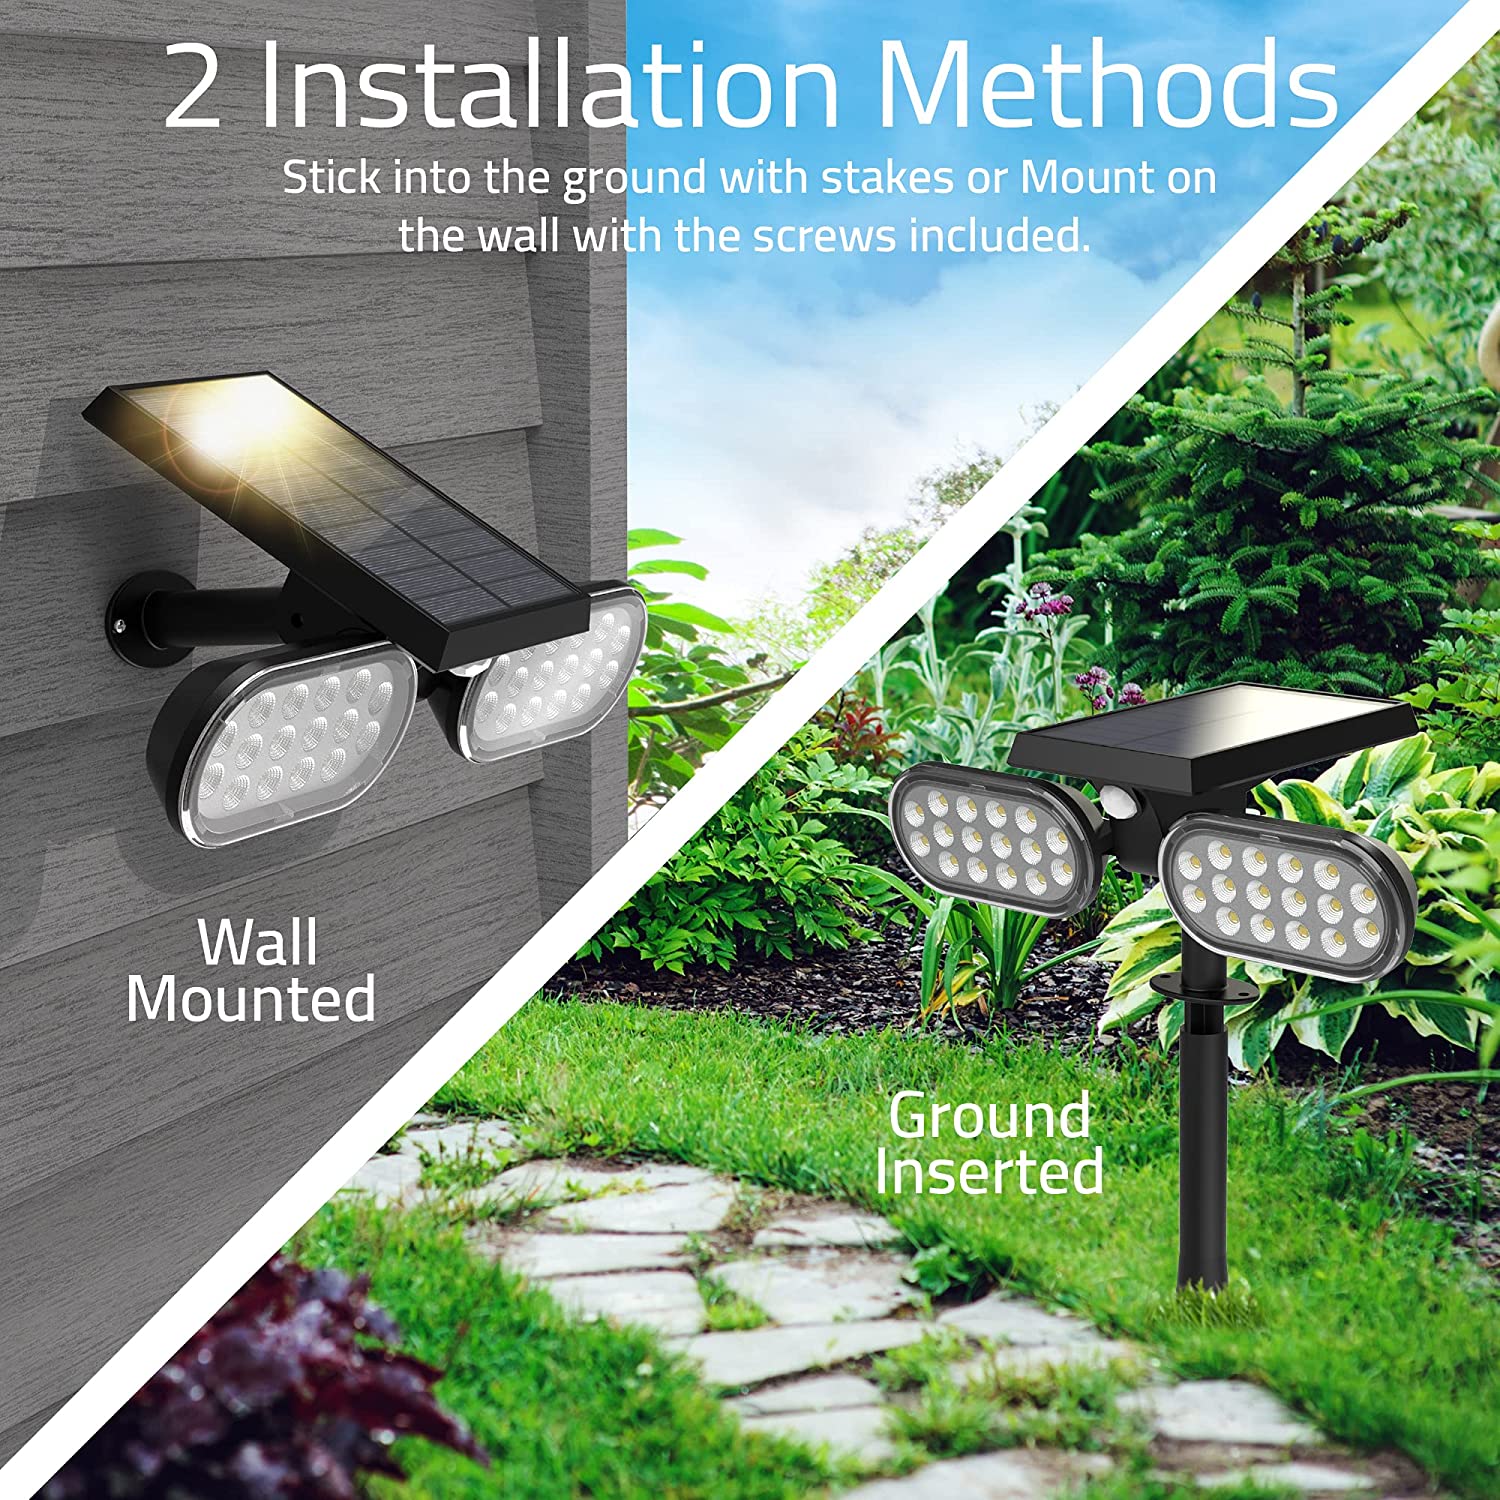 Outdoor 32 LED Motion Sensor Spotlights IP65 Waterproof Solar Powered Garden Light